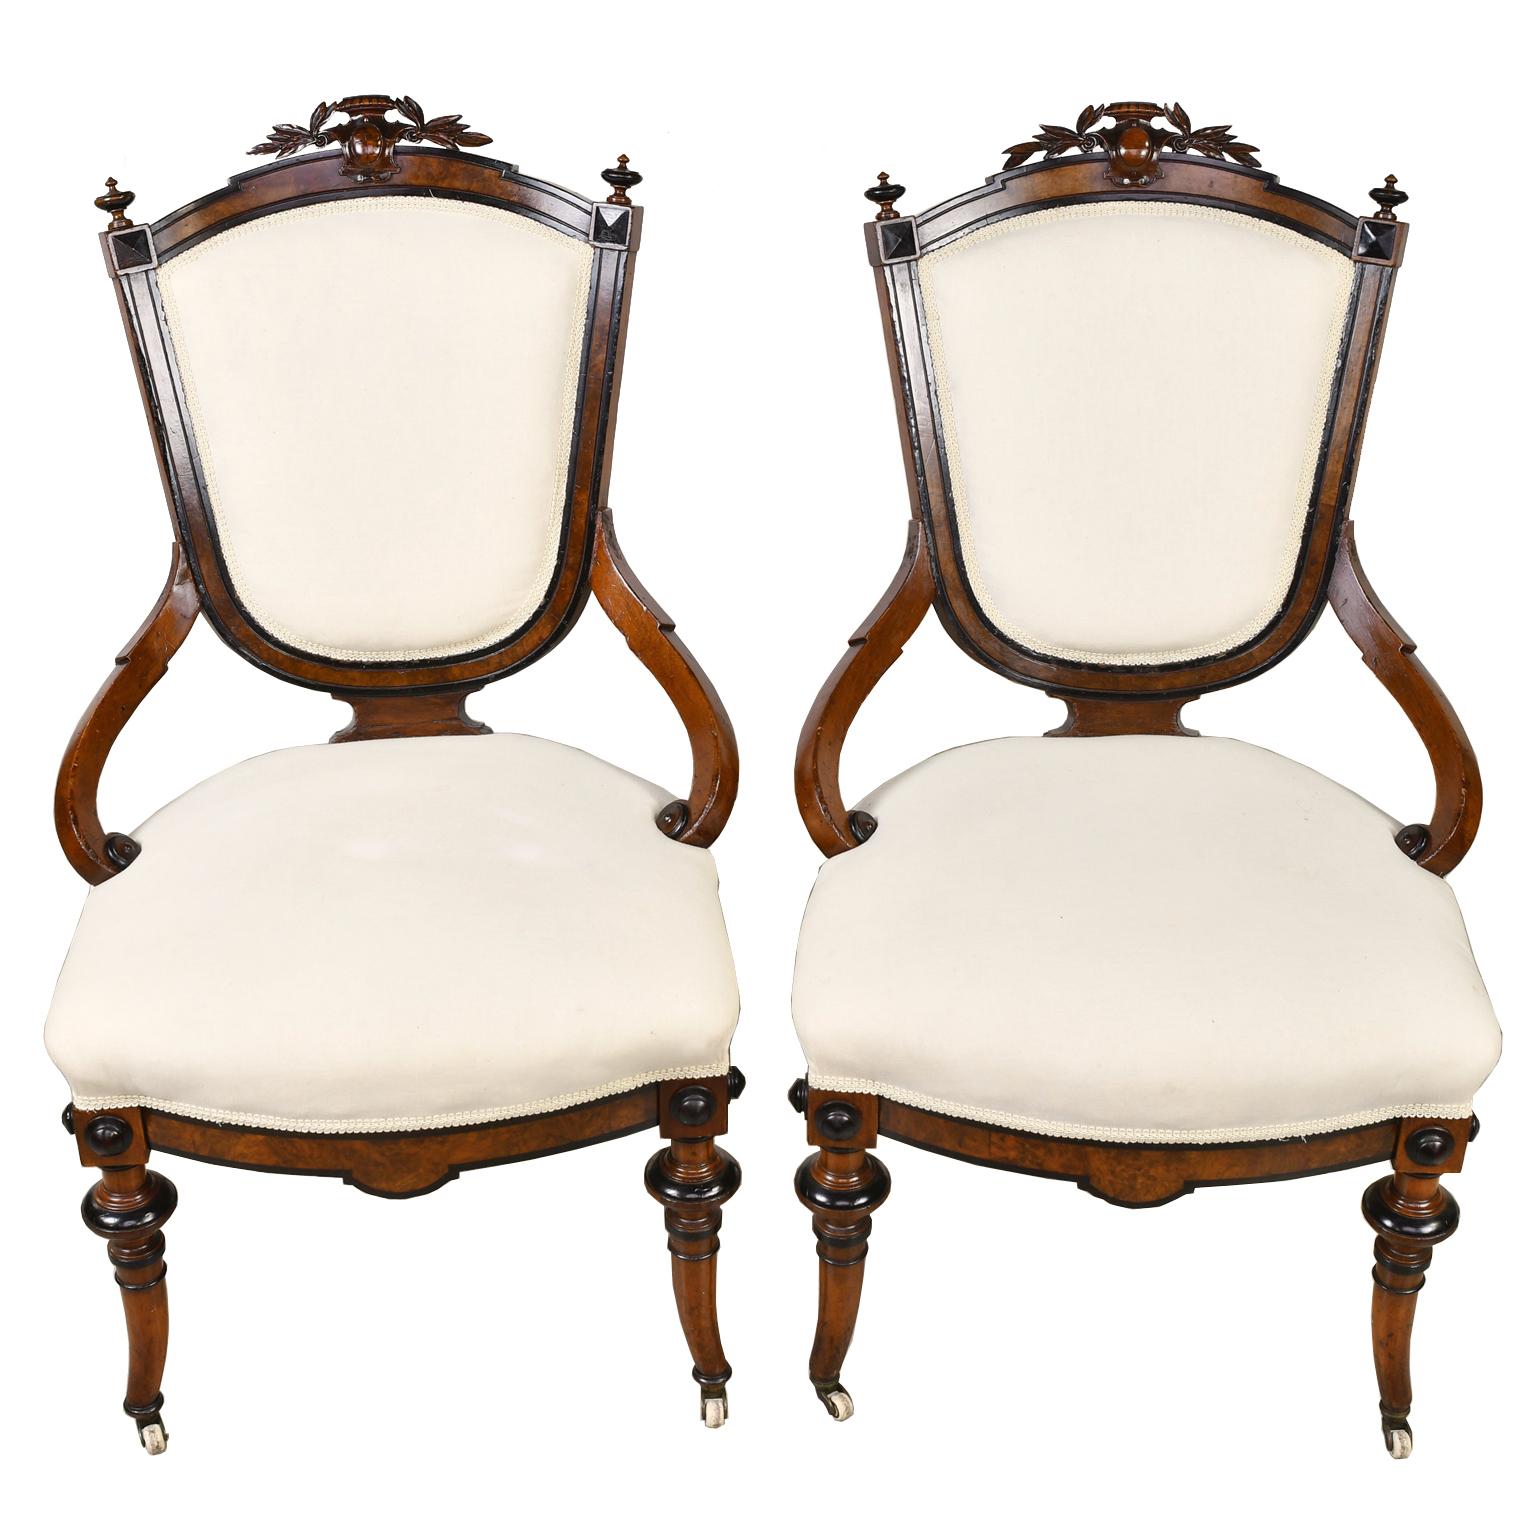 Une belle paire de fauteuils Napoléon III avec un cadre en noyer avec des détails en noyer ronce et ébonisé. Le bouclier est orné de feuilles de laurier sculptées et d'un cartouche au-dessus de la traverse et de fleurons aux angles. Les chaises ont